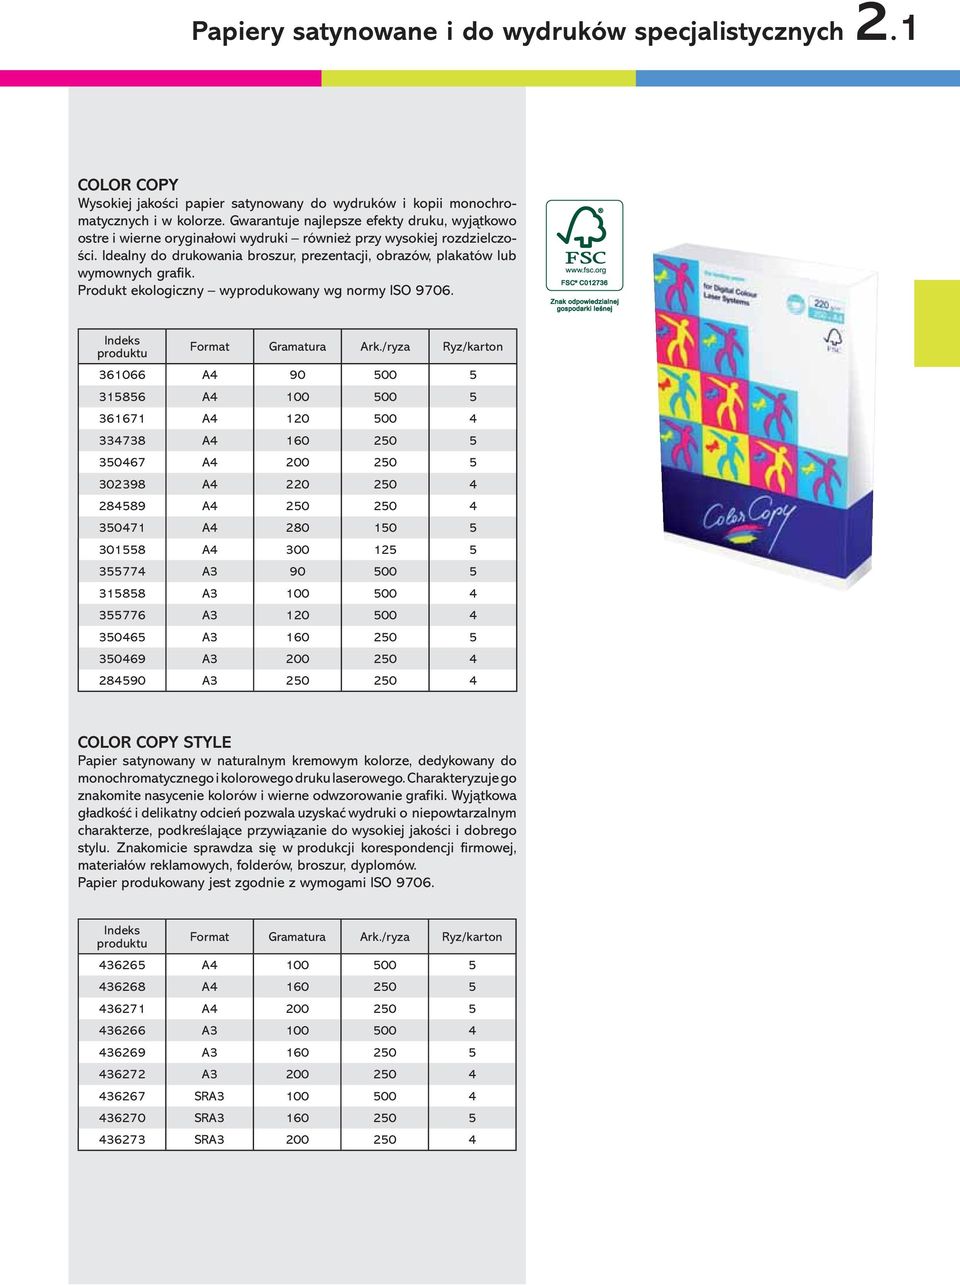 Idealny do drukowania broszur, prezentacji, obrazów, plakatów lub wymownych grafik. Produkt ekologiczny wyprodukowany wg normy ISO 9706. Format Gramatura Ark.